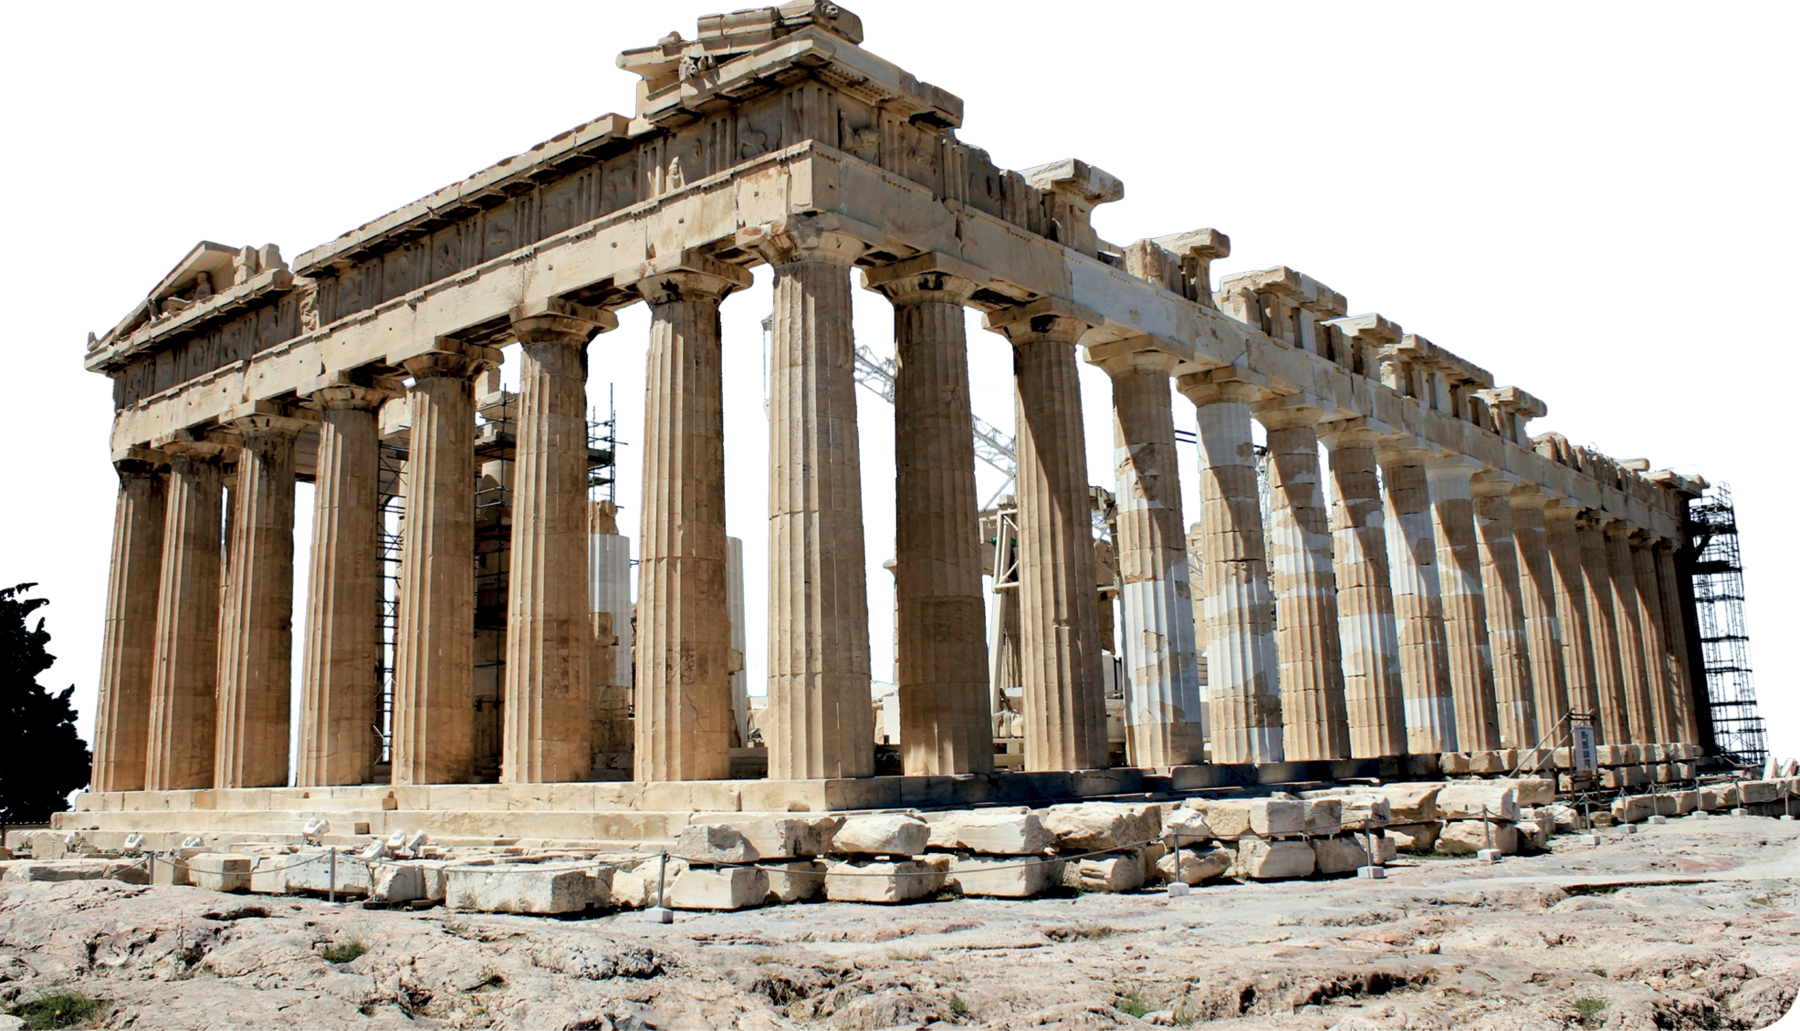 Fotografia. Ruínas de uma construção, com diversas colunas em formato cilíndrico e ornamentada.